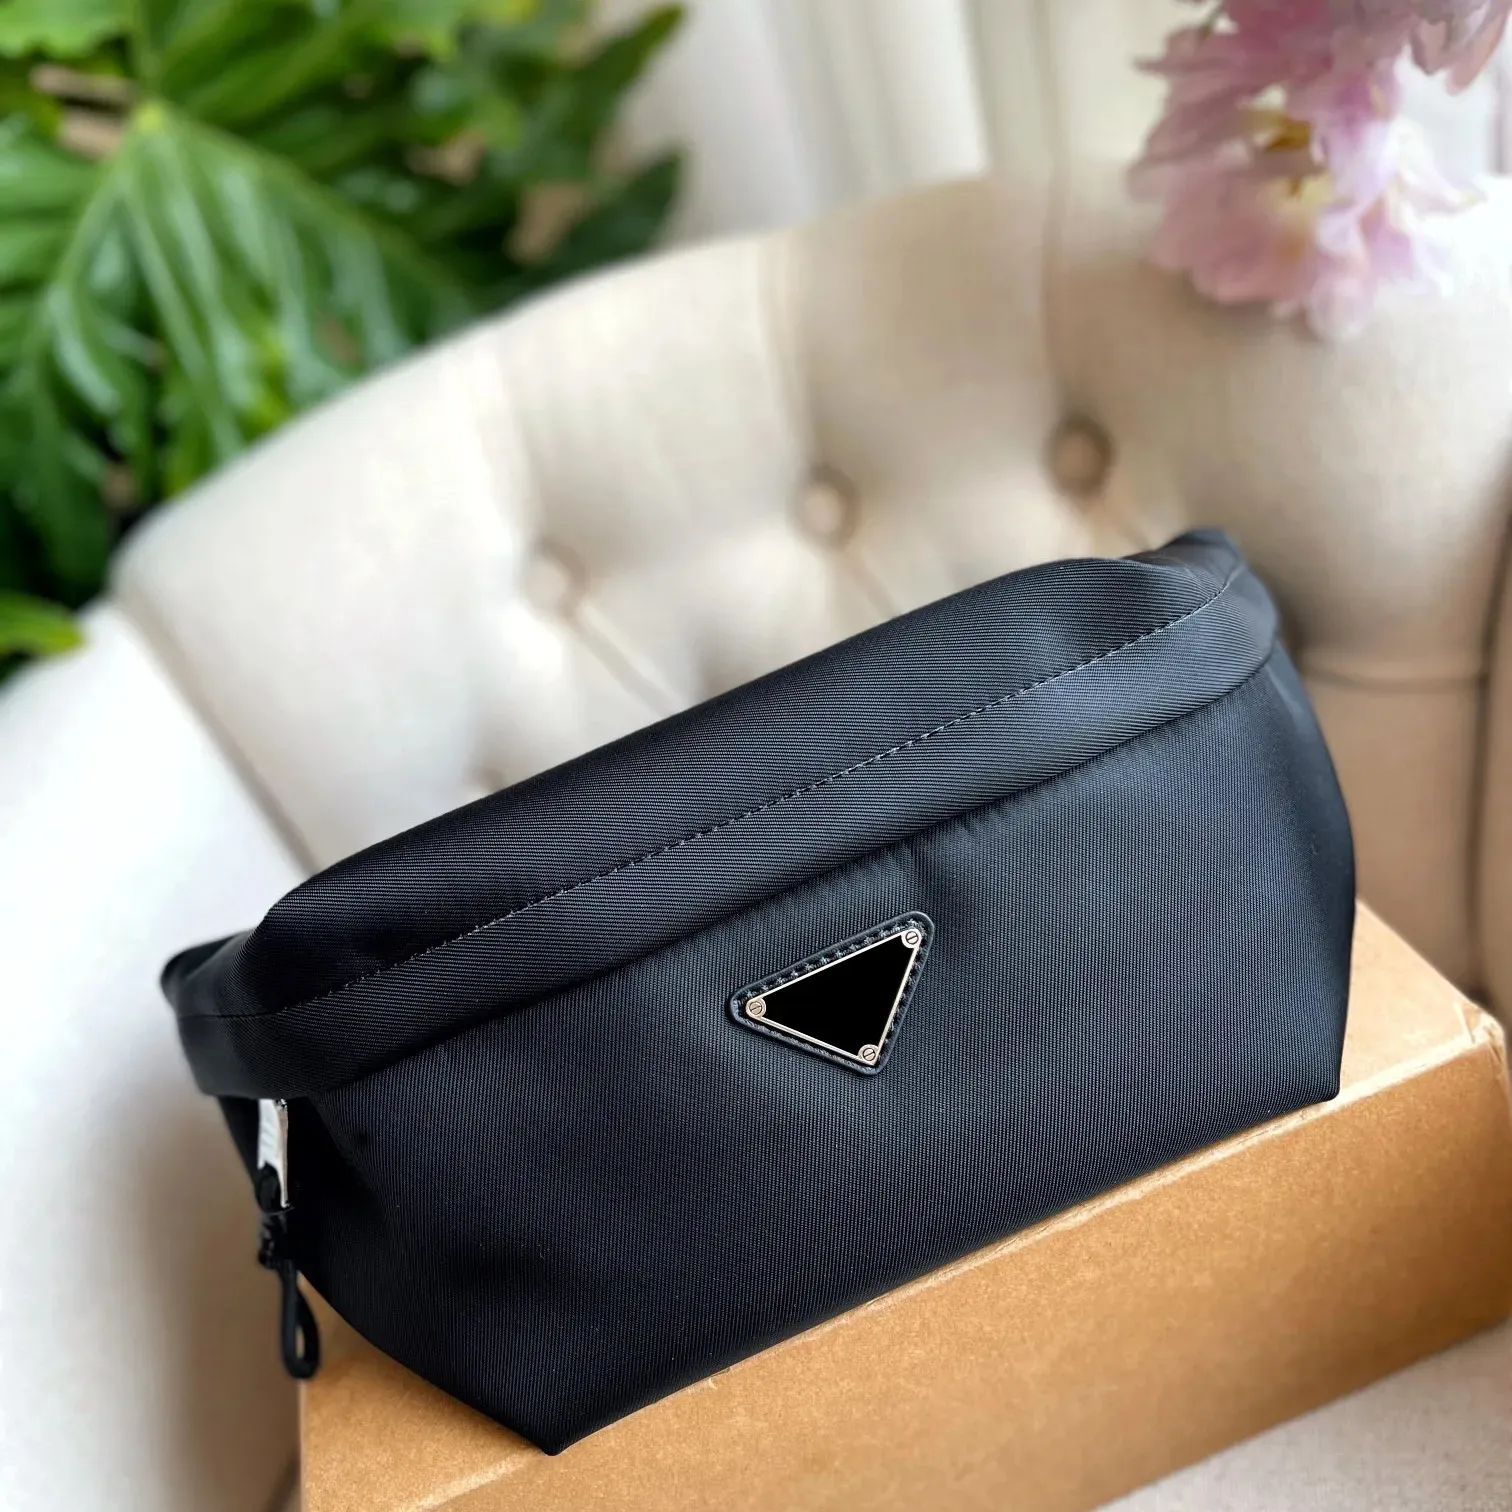 Torba designerska unisex talia nylonowa torba na klatkę piersiową czarny klasyczny na zewnątrz, lekka torba crossbody